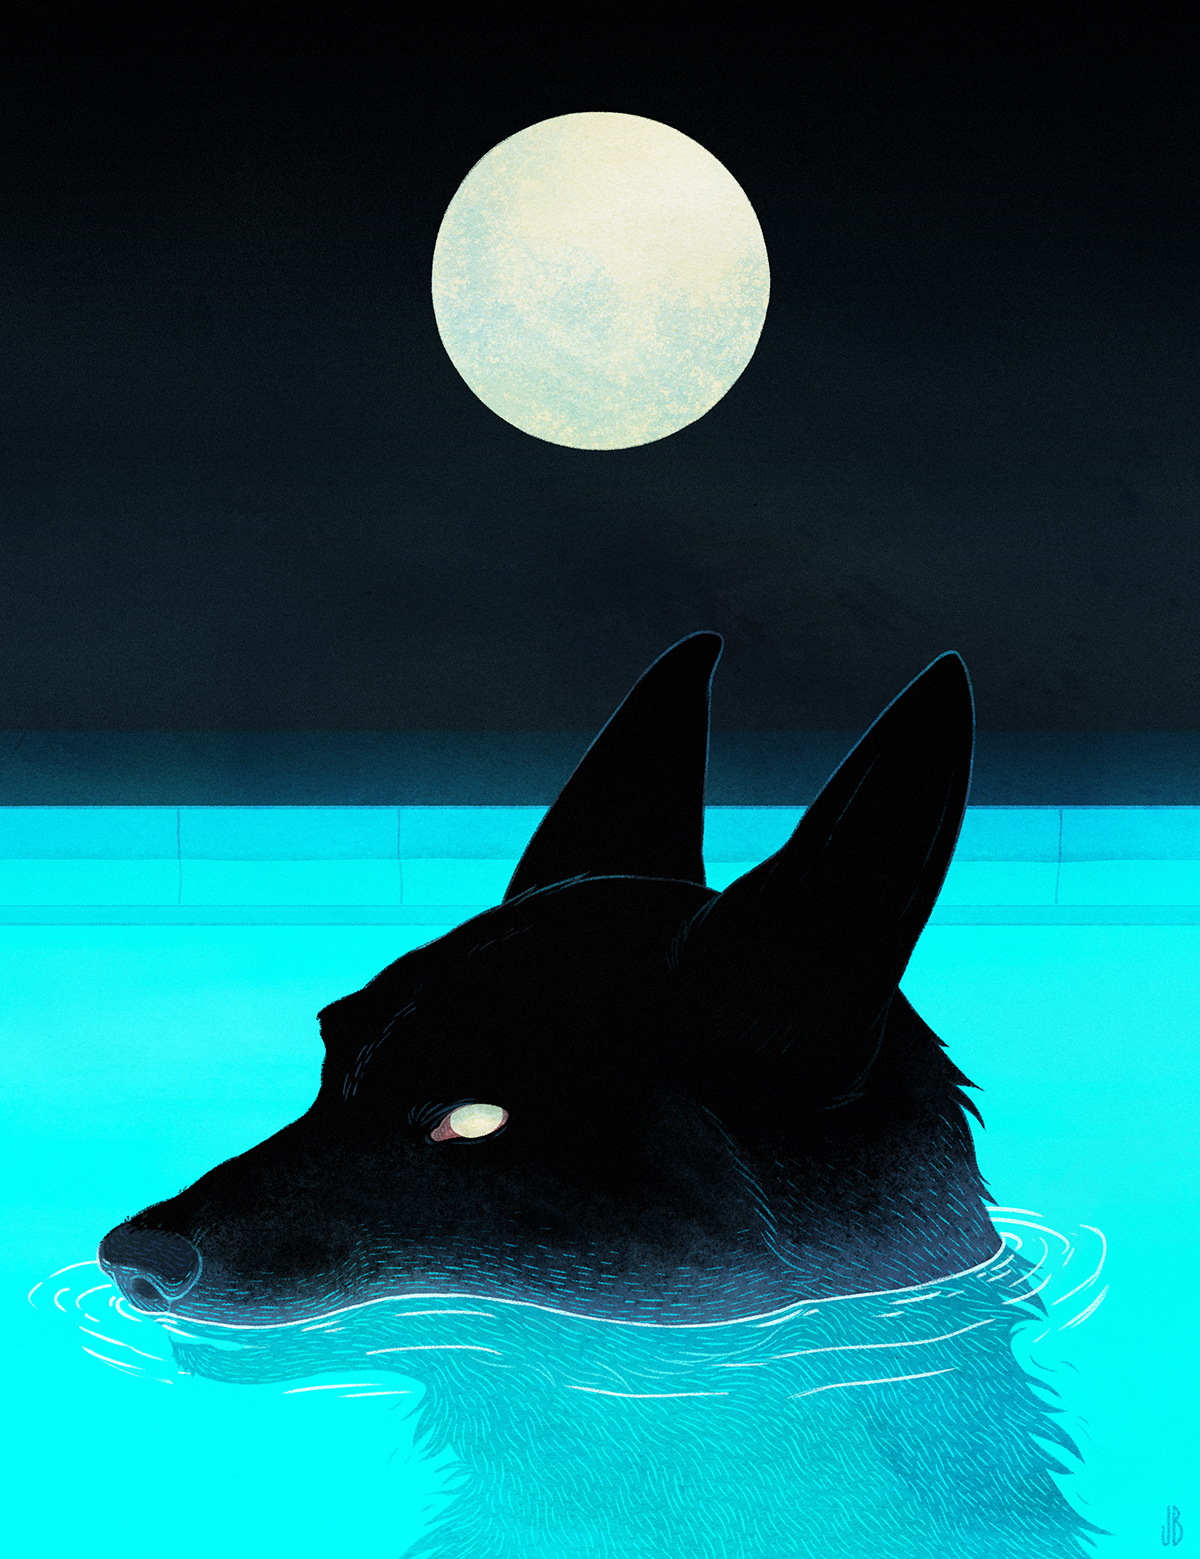 Фото Волк в воде на фоне полной луны, by Storenvy